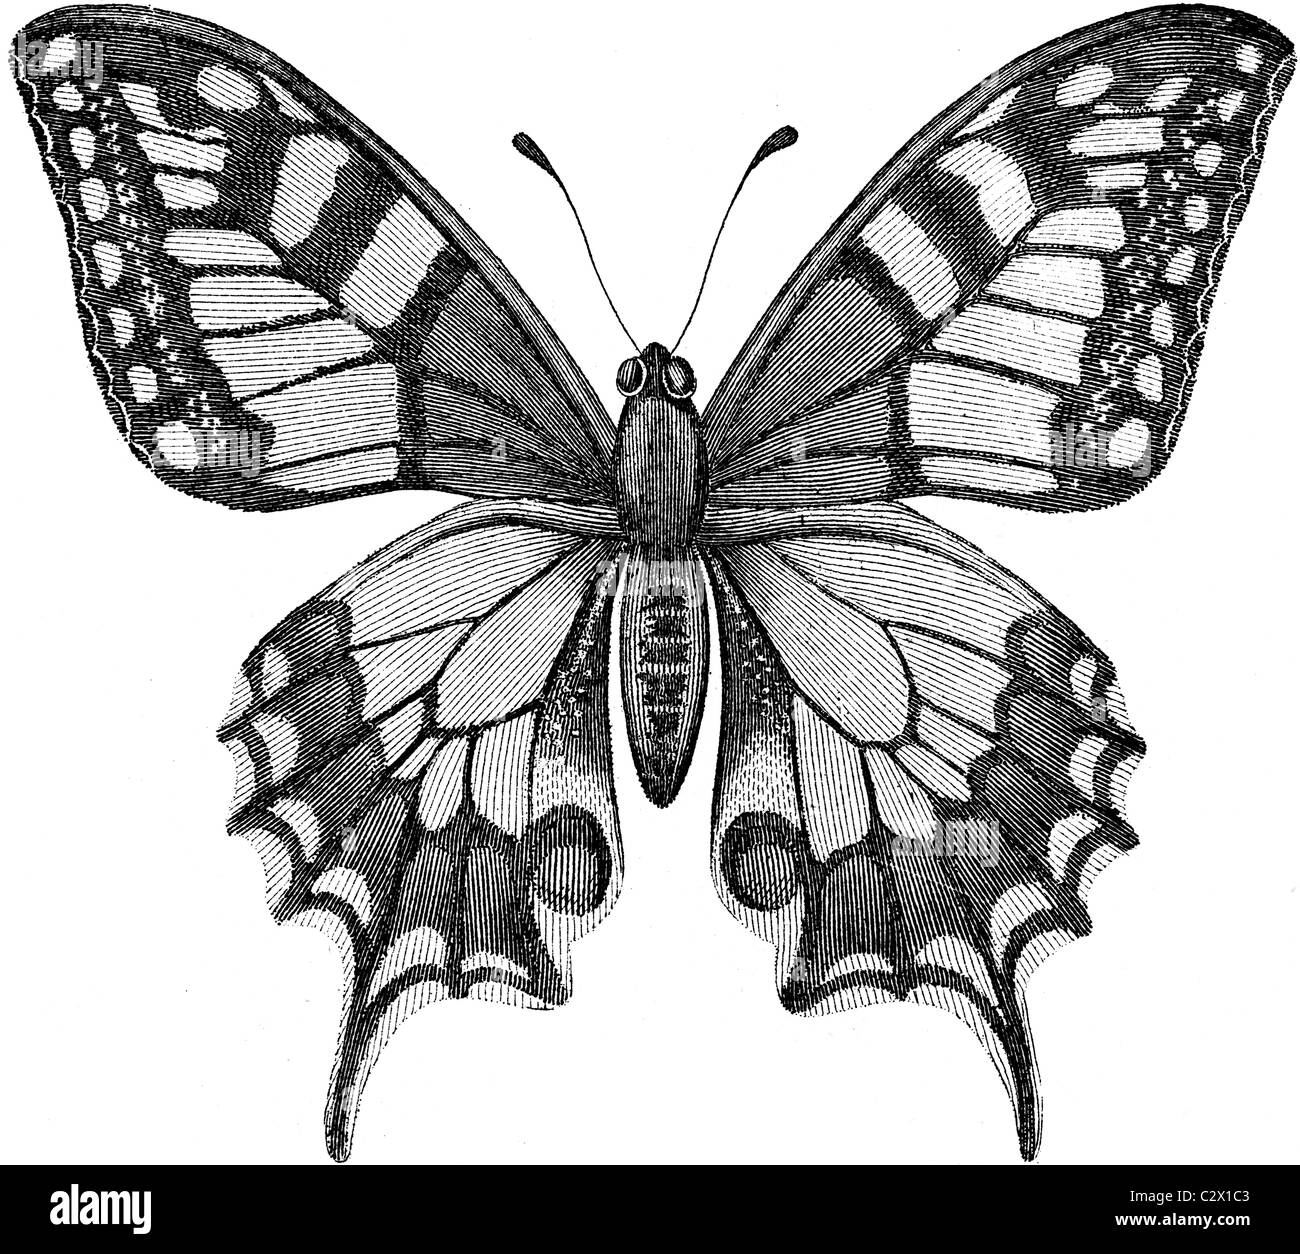 Buchillustration des 19. Jahrhunderts, 9. Ausgabe der Encyclopaedia Britannica, der Schwalbenschwanz-Schmetterling (1875) entnommen Stockfoto